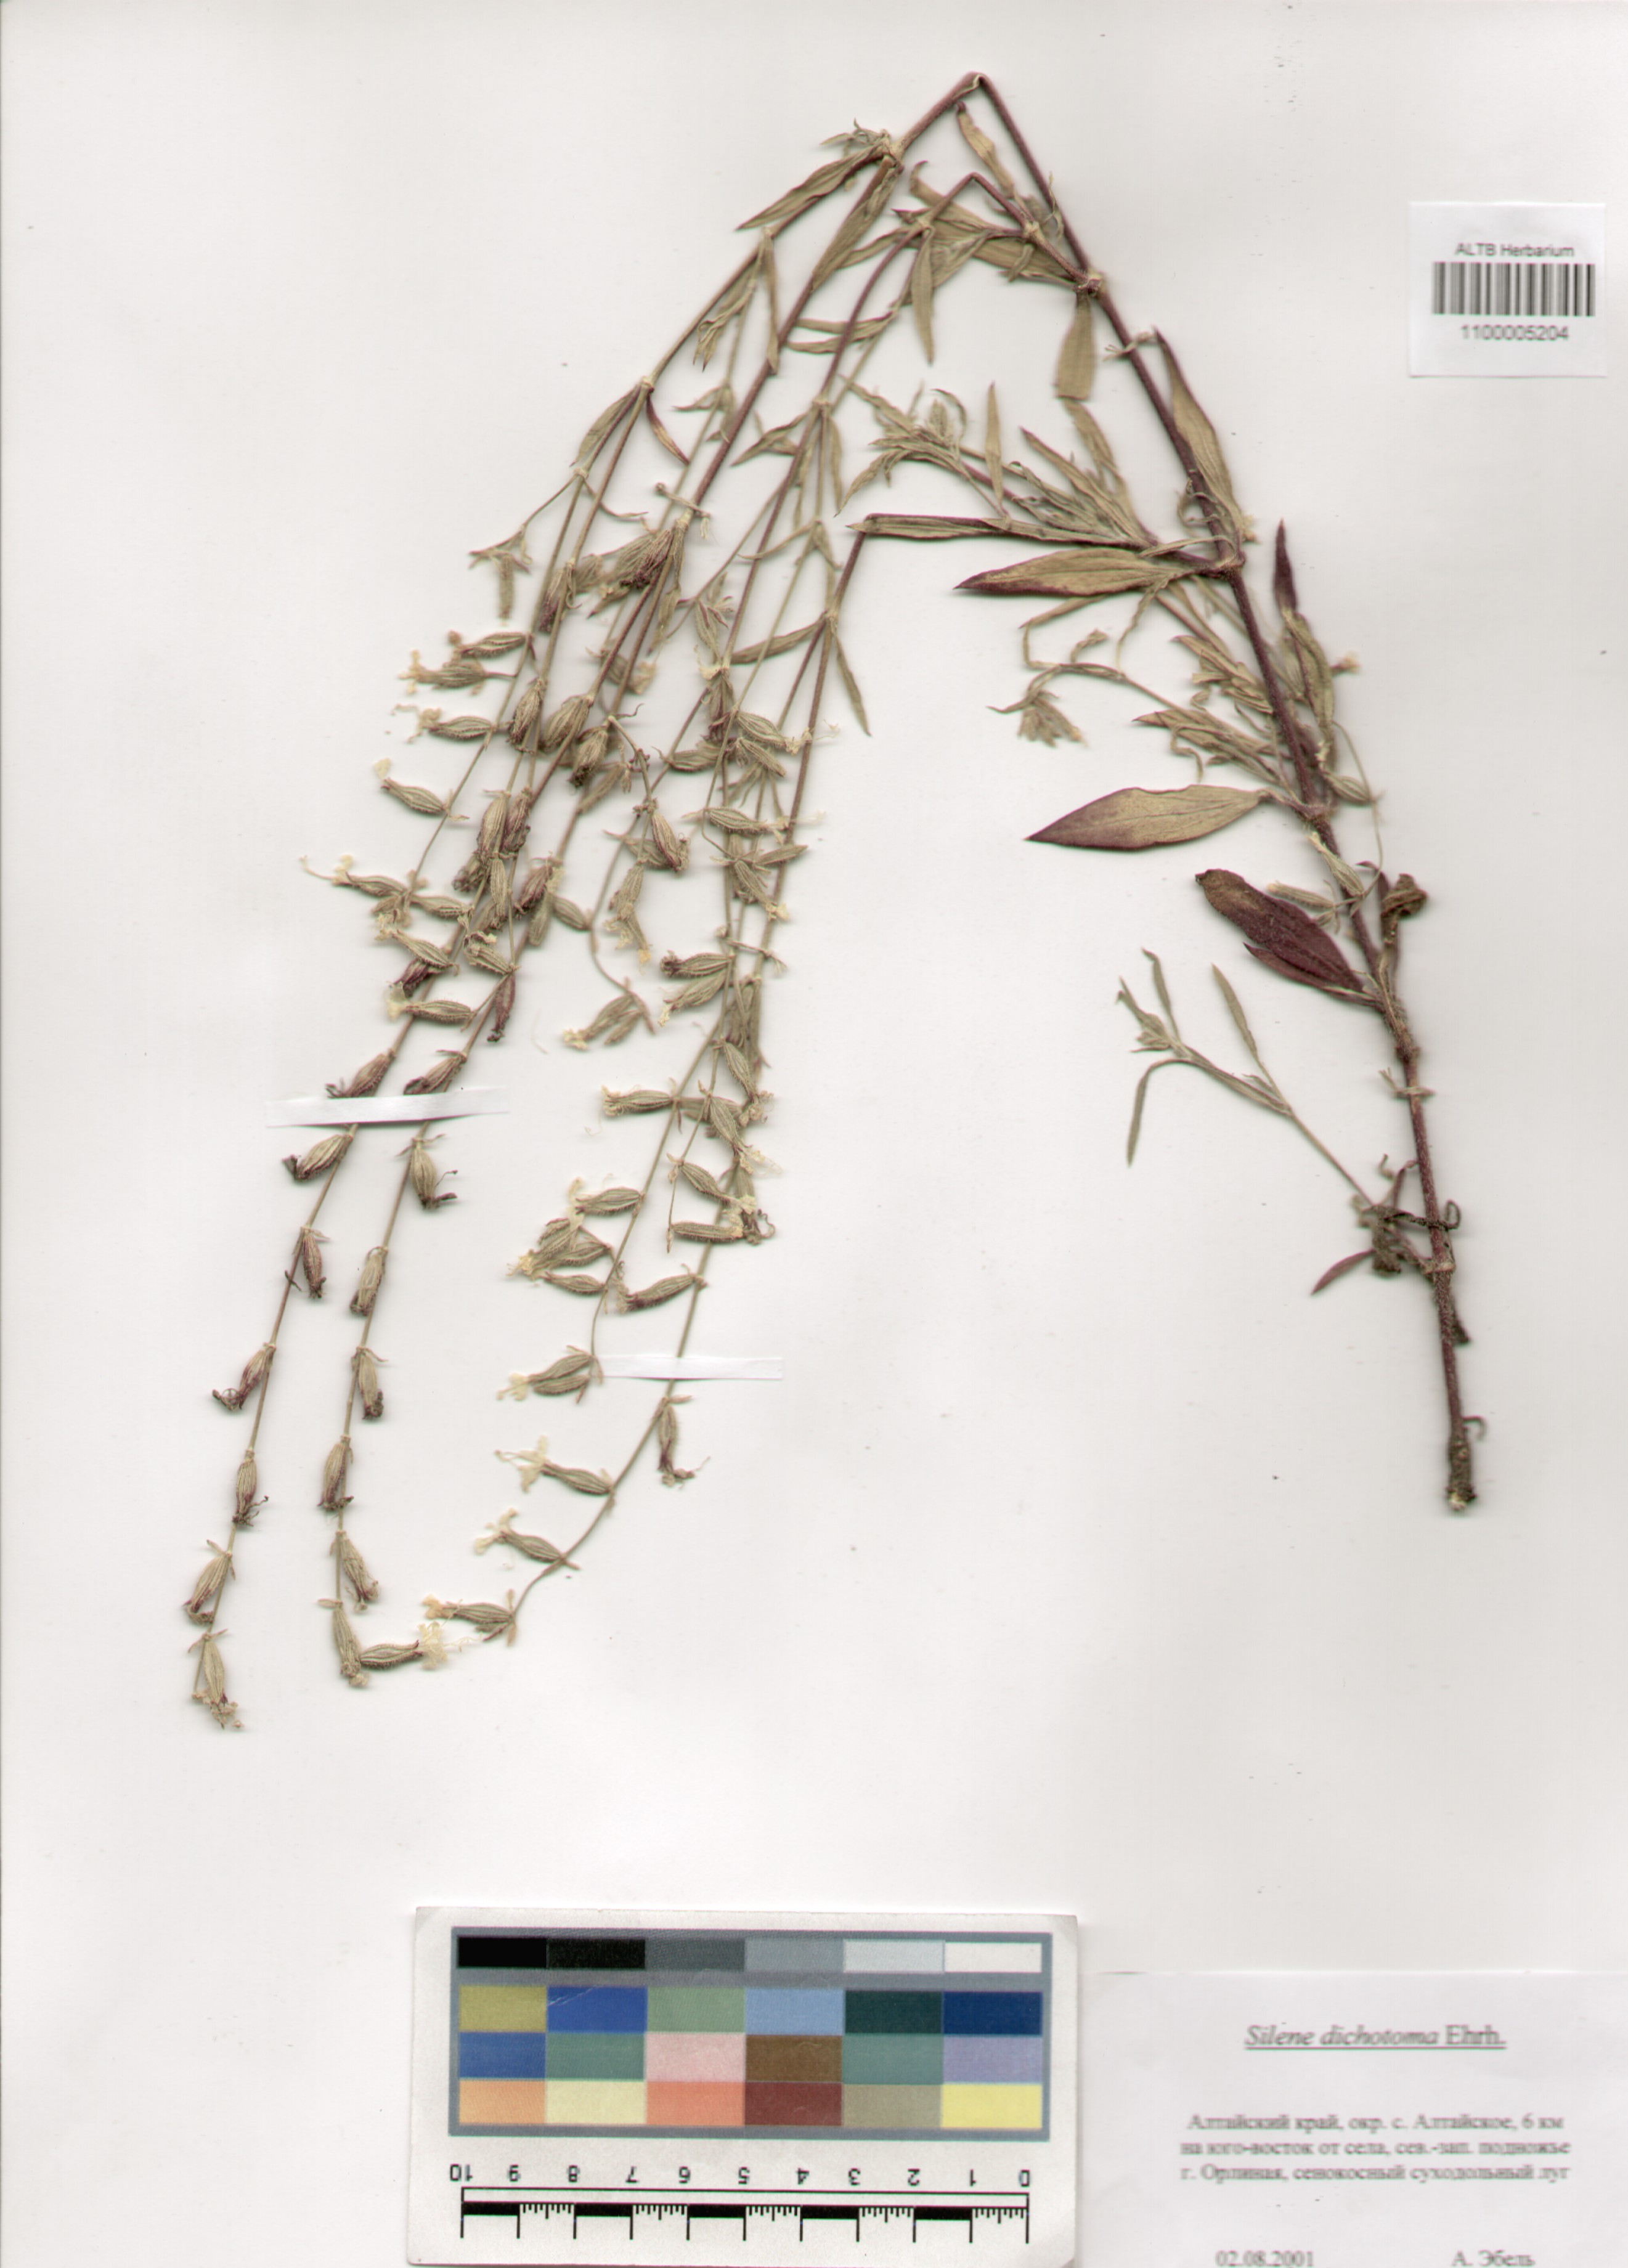 Caryophyllaceae,Silene dichotoma Ehrh.